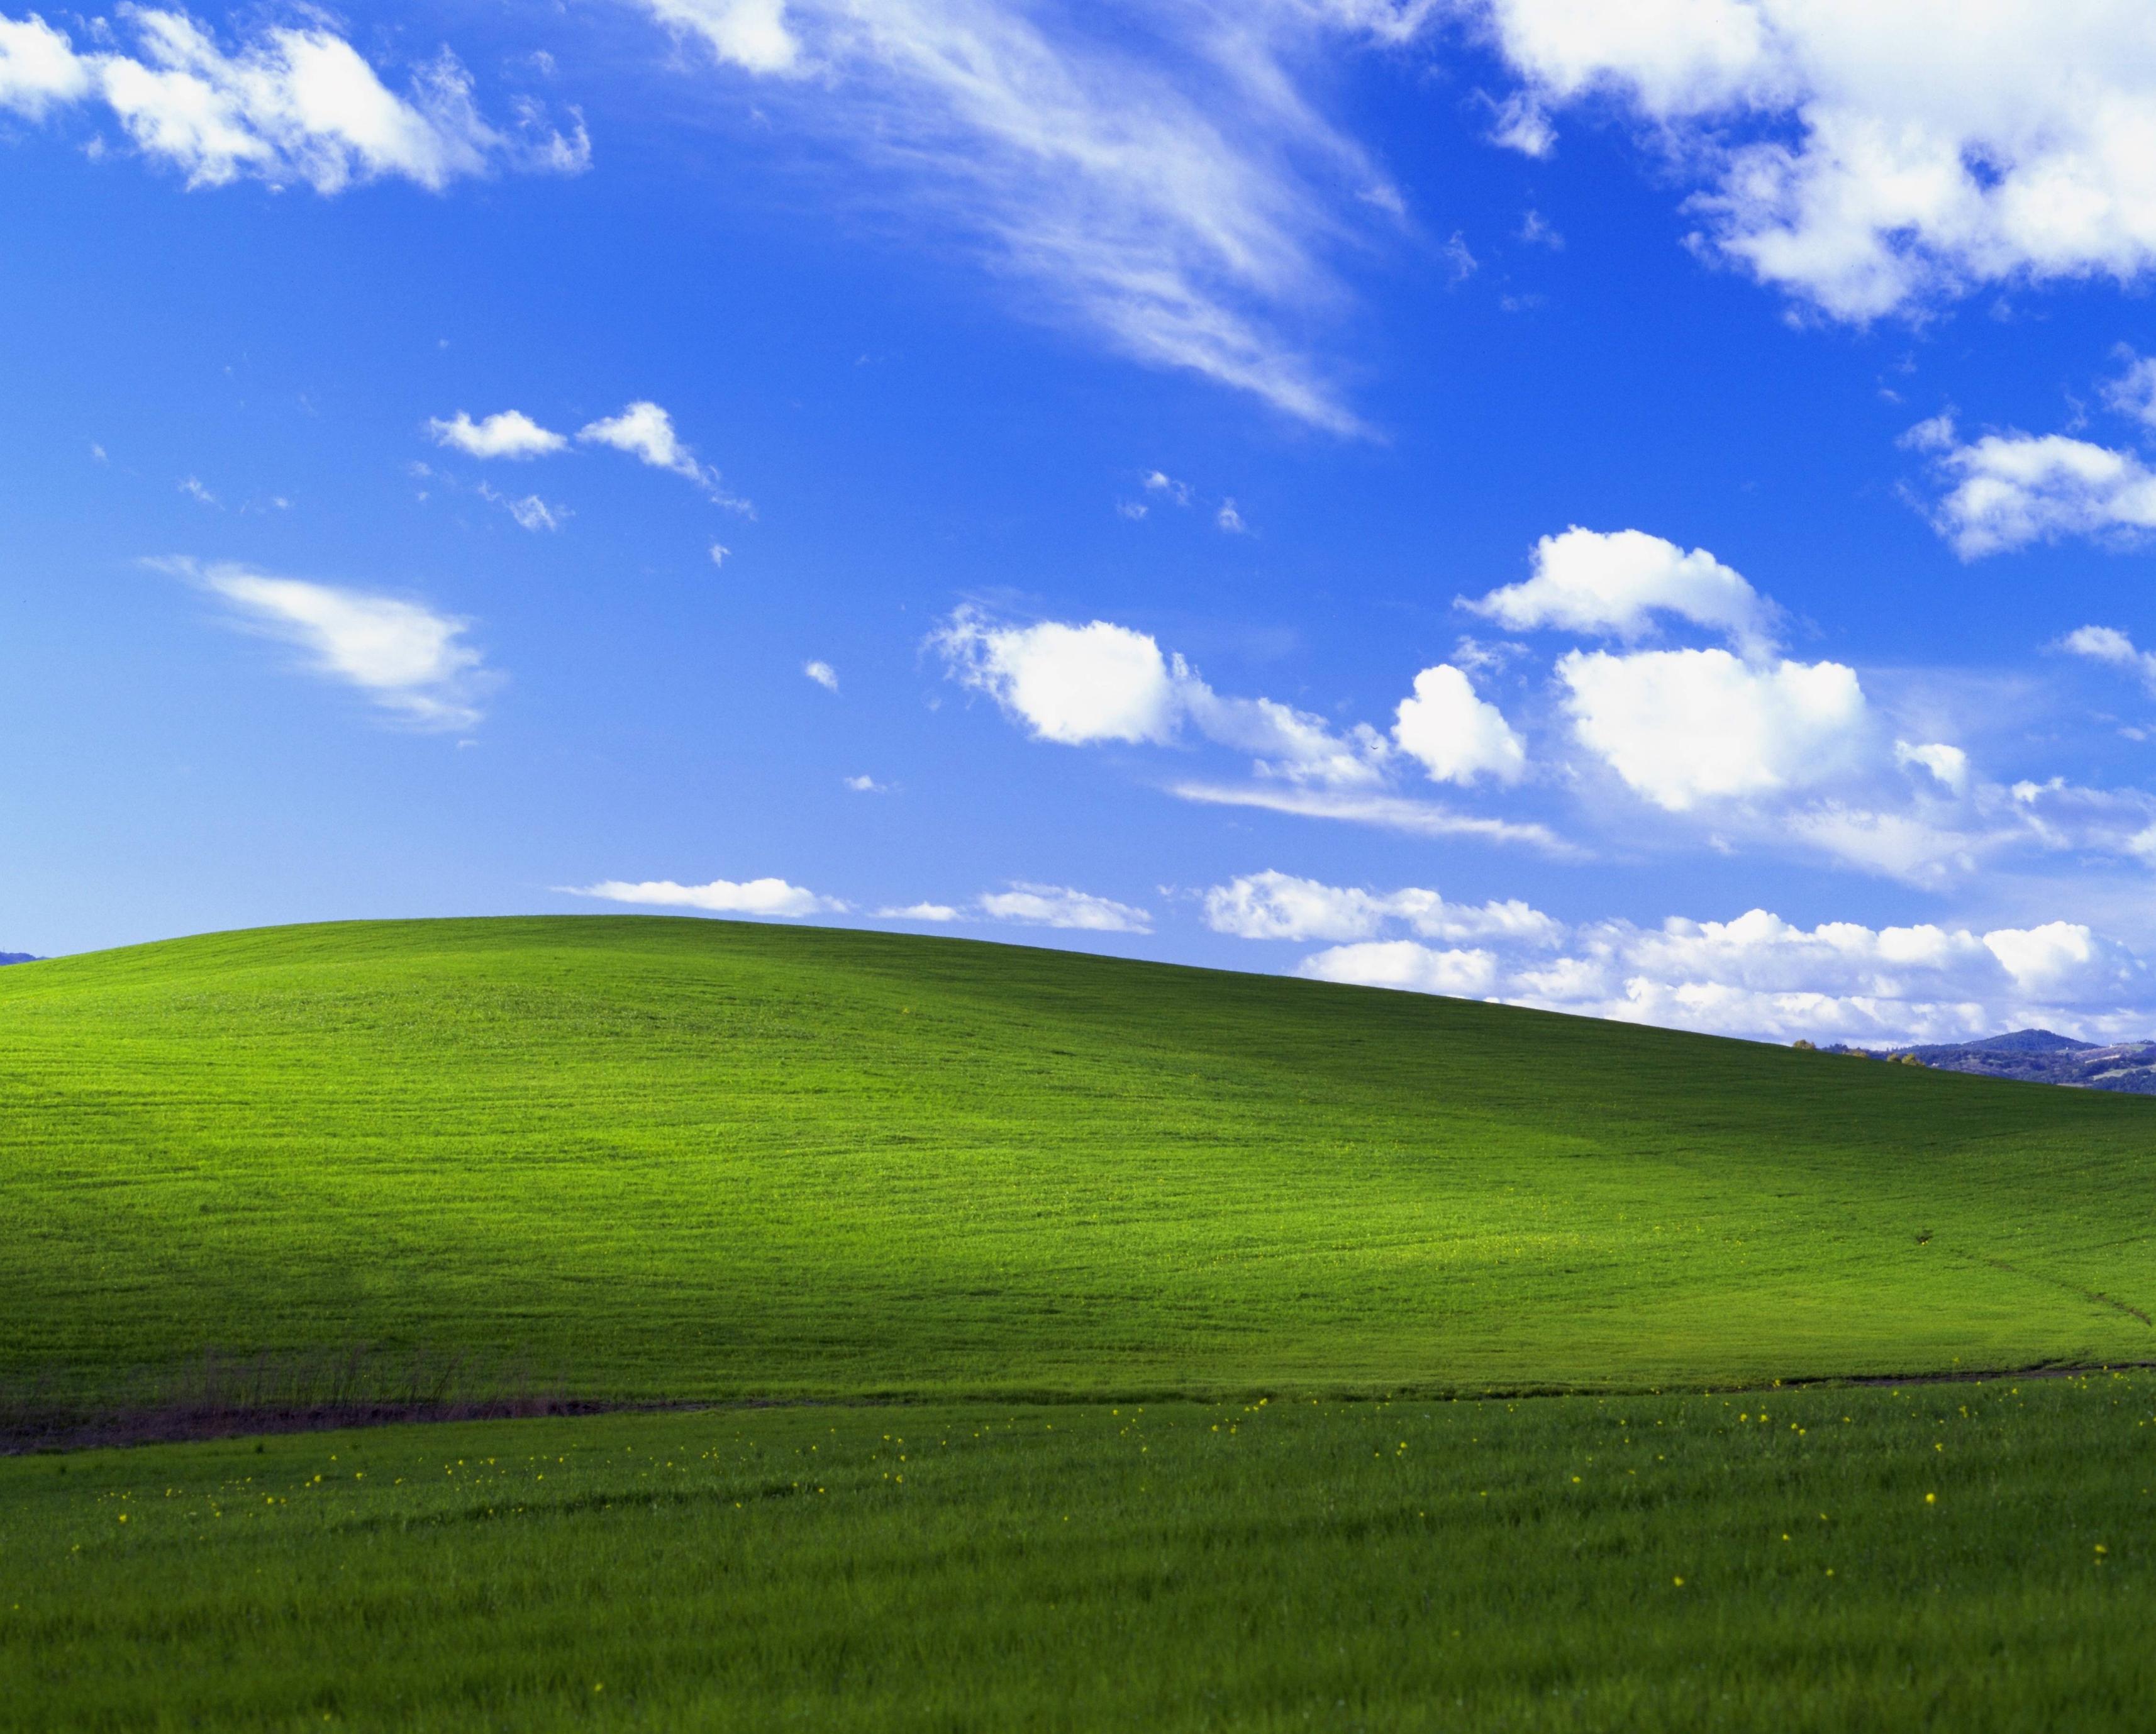 Windows 98 có những hình nền rực rỡ và độc đáo mang lại cho người dùng một trải nghiệm thật sự khác biệt. Hình ảnh liên quan cho phép bạn thưởng thức những bức ảnh đẹp nhất từ thời đại Windows